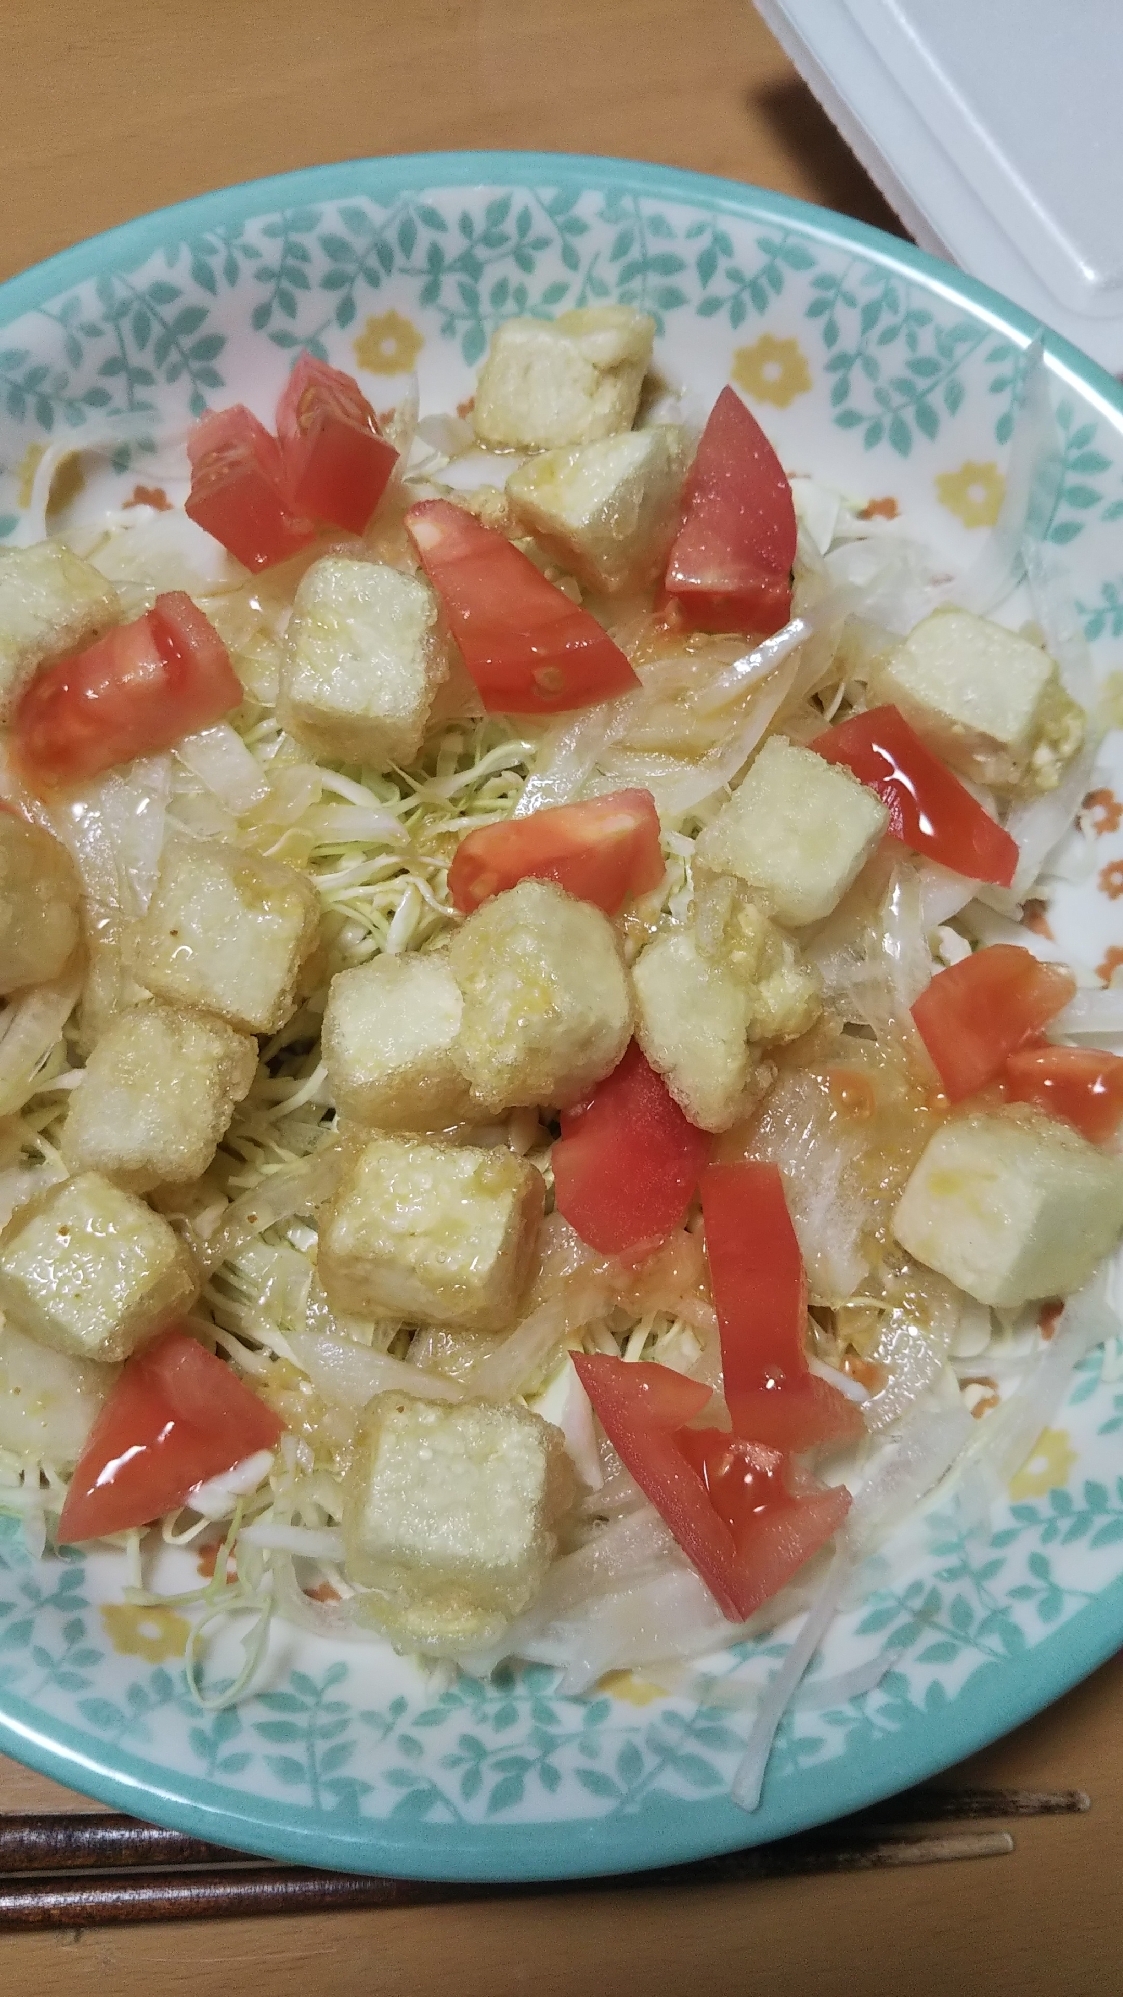 豆腐とトマトのサラダ